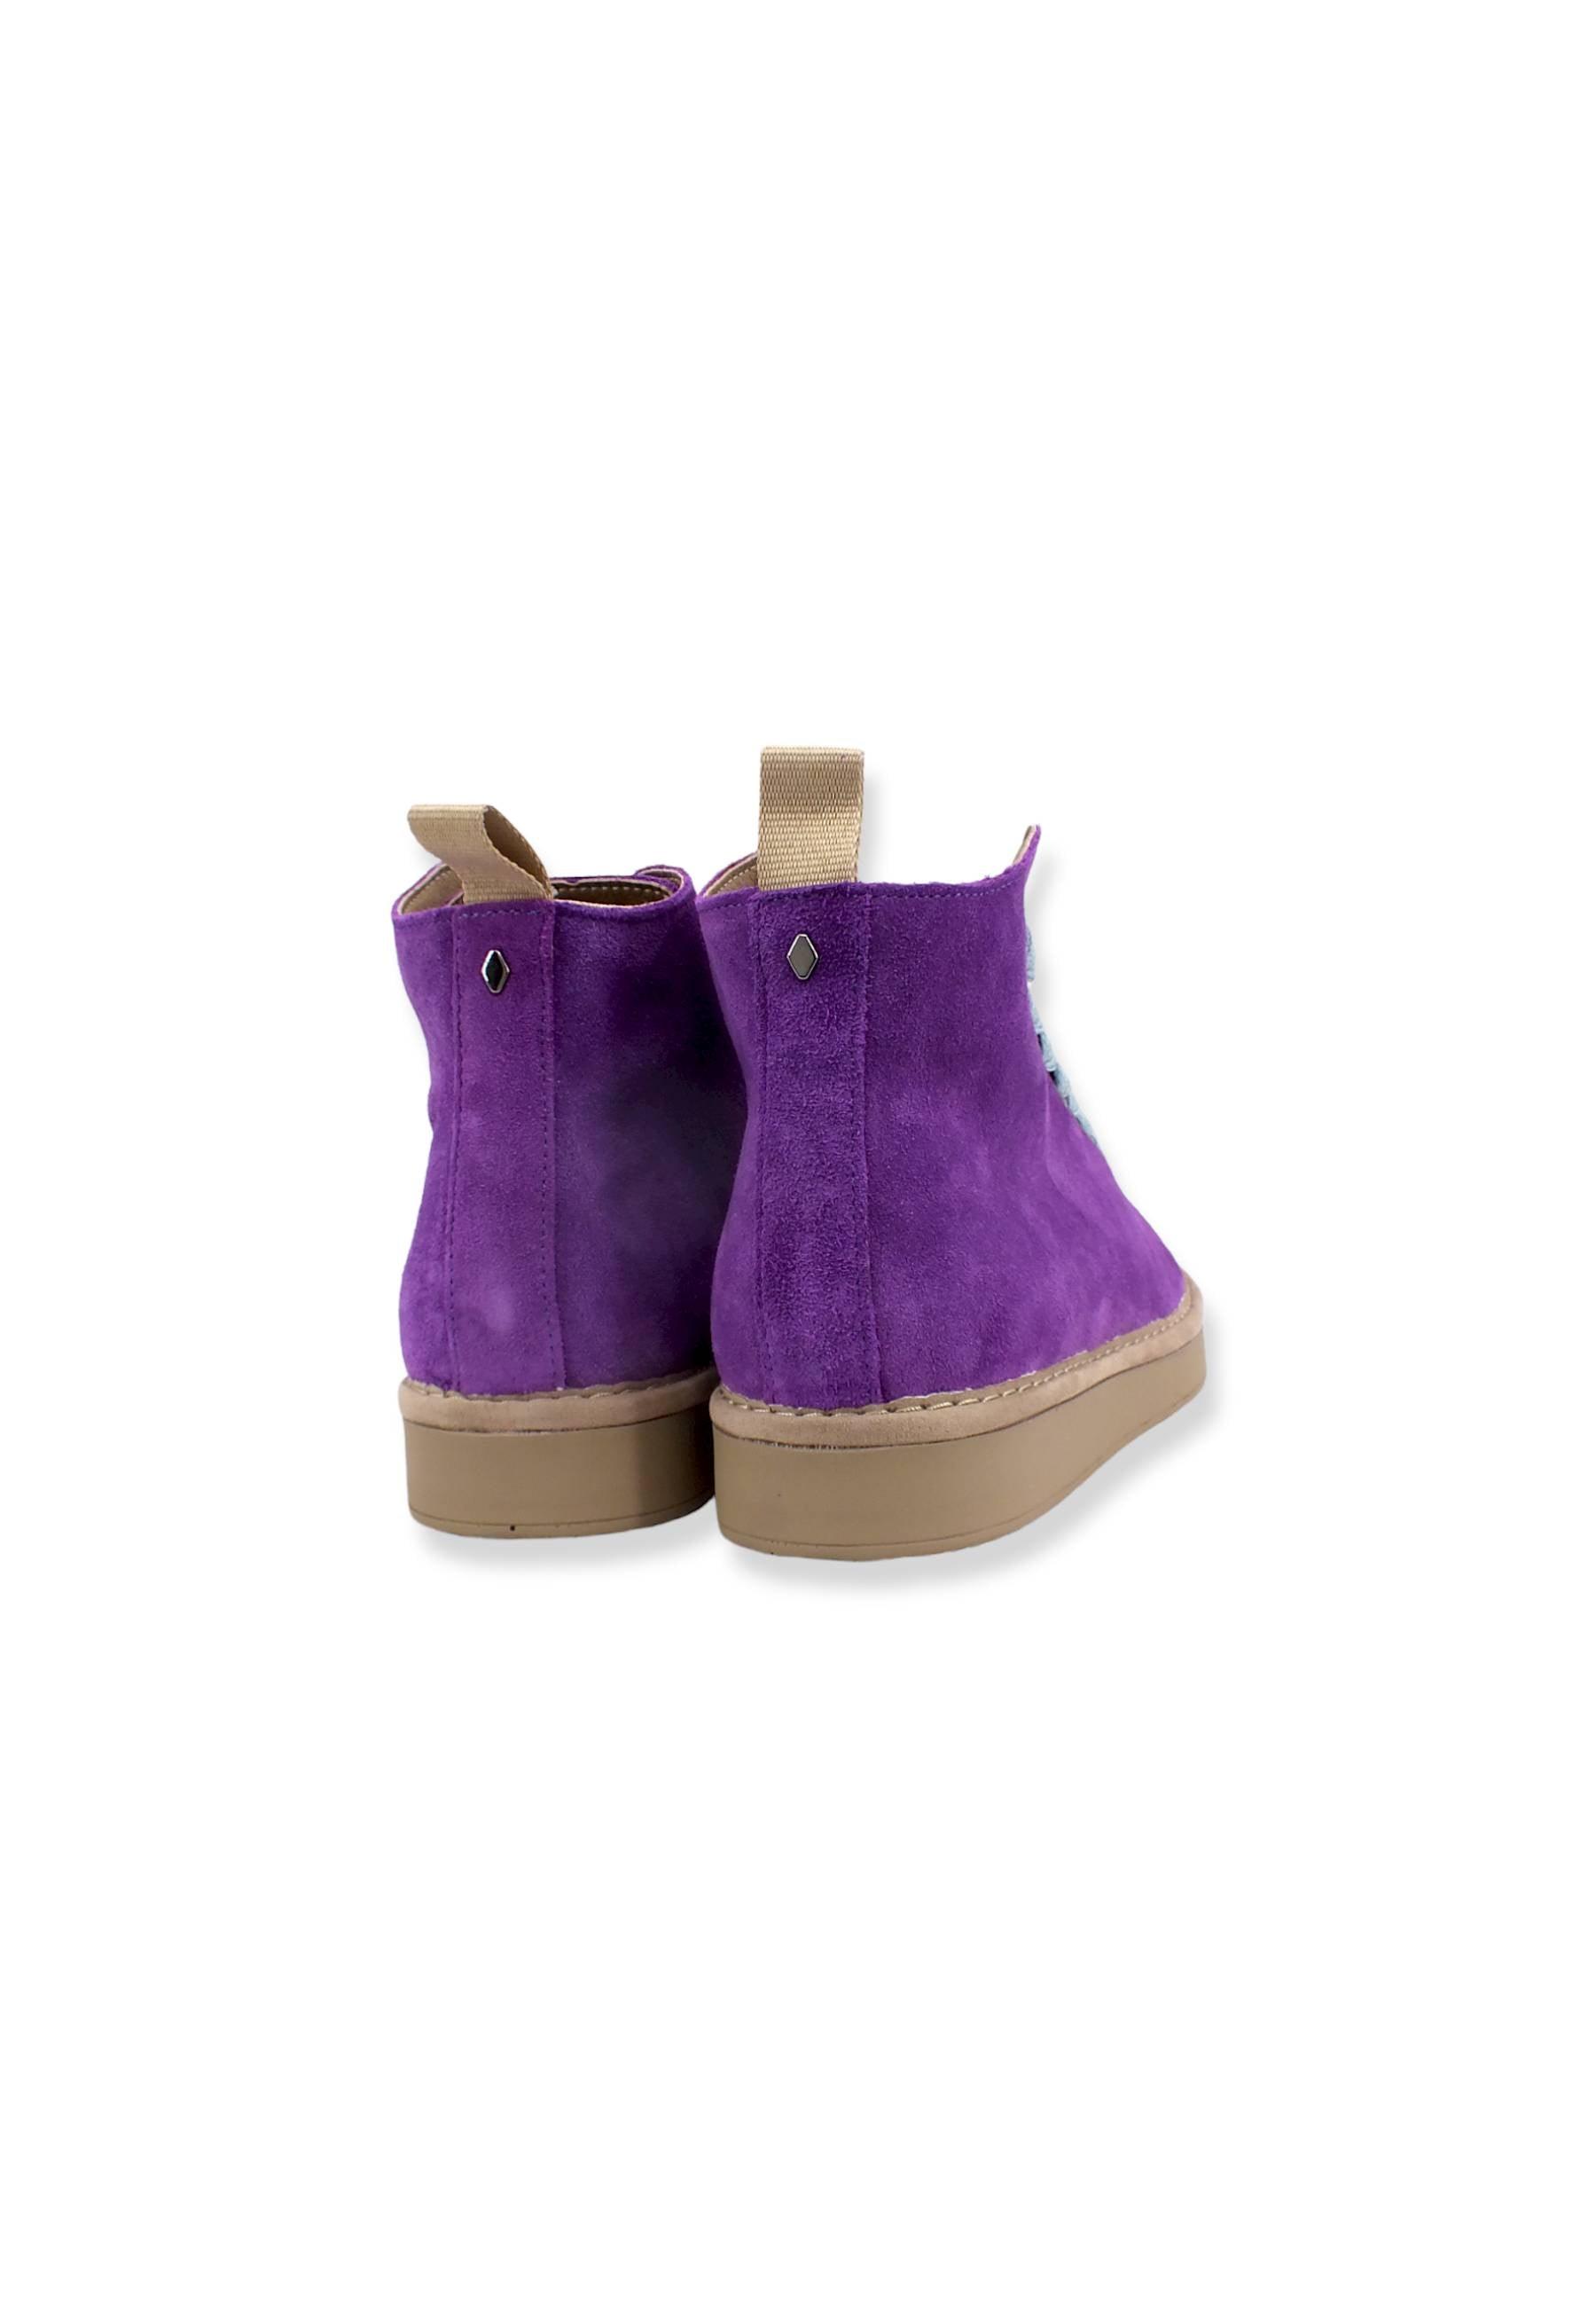 PAN CHIC Ankle Boot Sneaker Donna Violet Azure P01W1400200005 - Sandrini Calzature e Abbigliamento